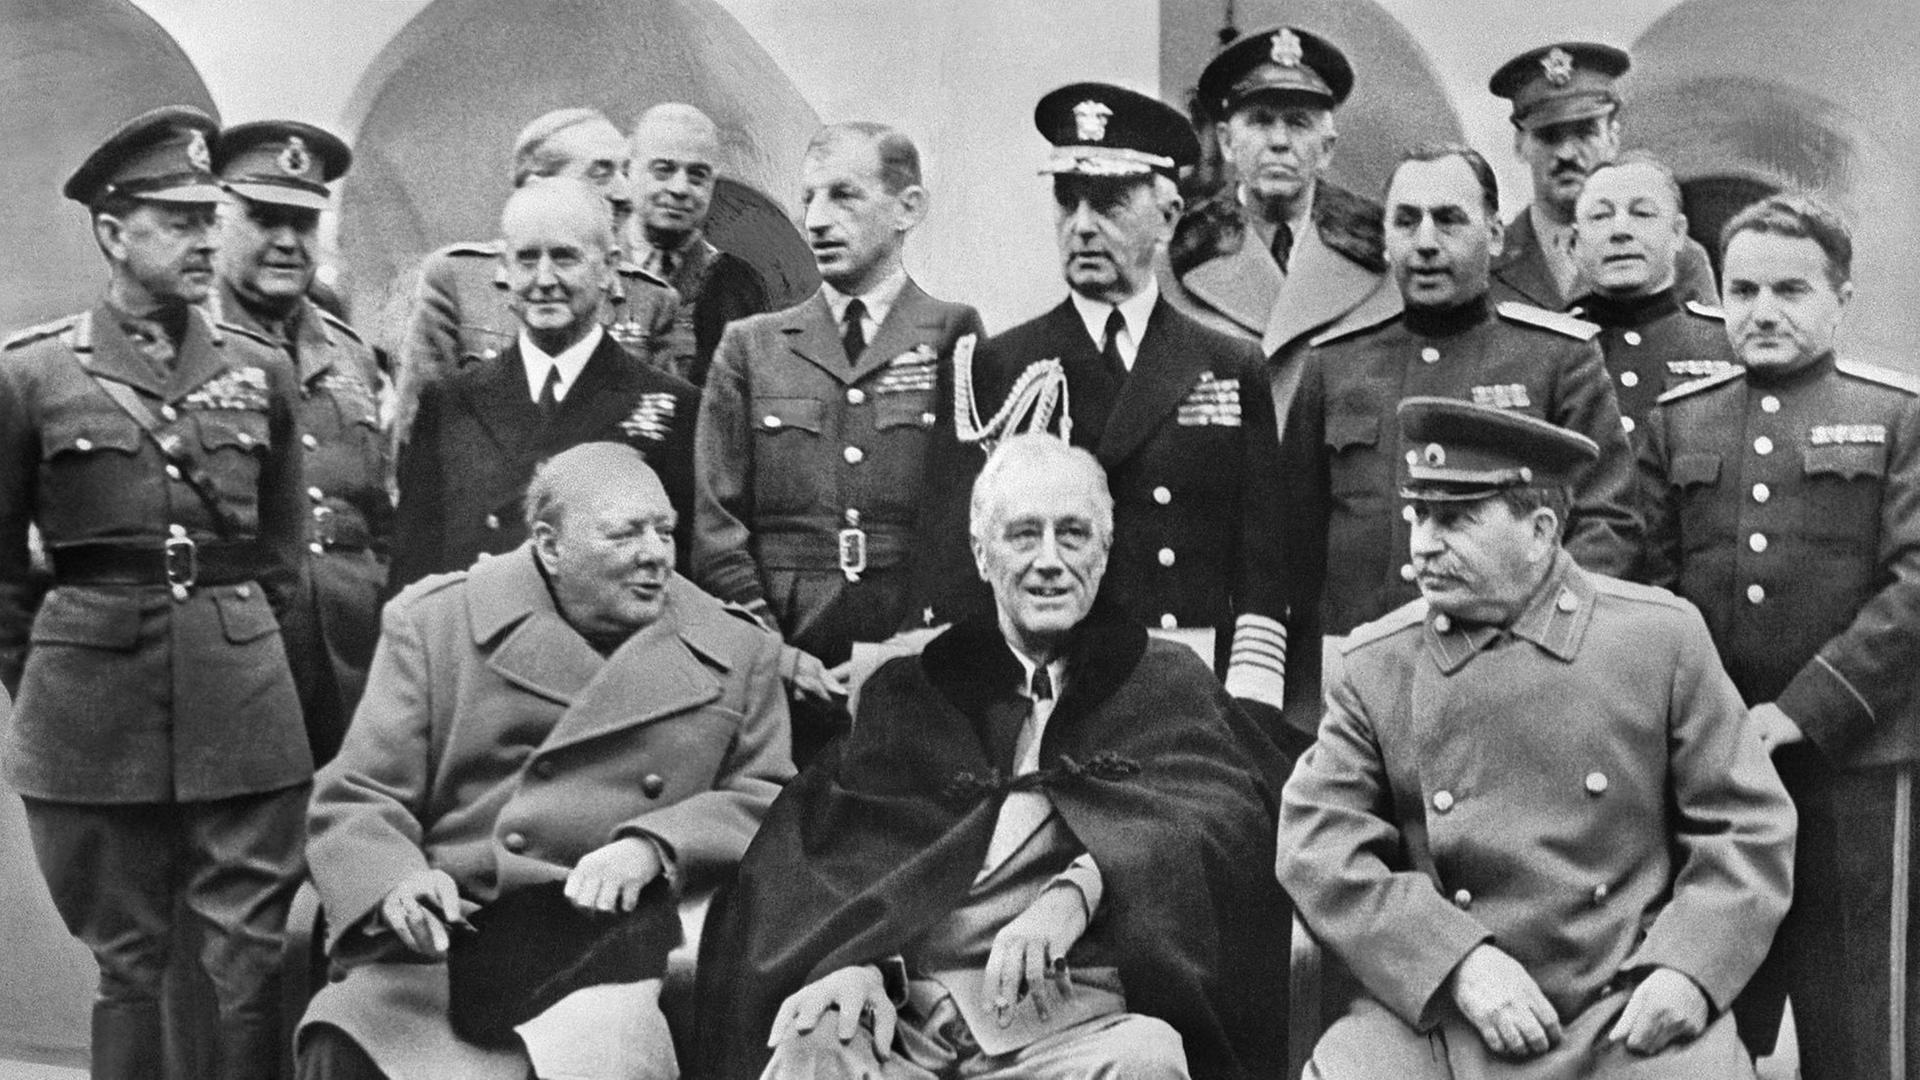 Eine historische Aufnahme zeigt den den britischen Prämierminister Winston Churchill zusammen mit US-Präident Franklin D. Roosevelt und Joseph Stalin bei der Konferenz in Jalta am 11.02.1945 sitzend. Im Hintergrund stehen zwahlreiche Männer in militärischen Uniformen.